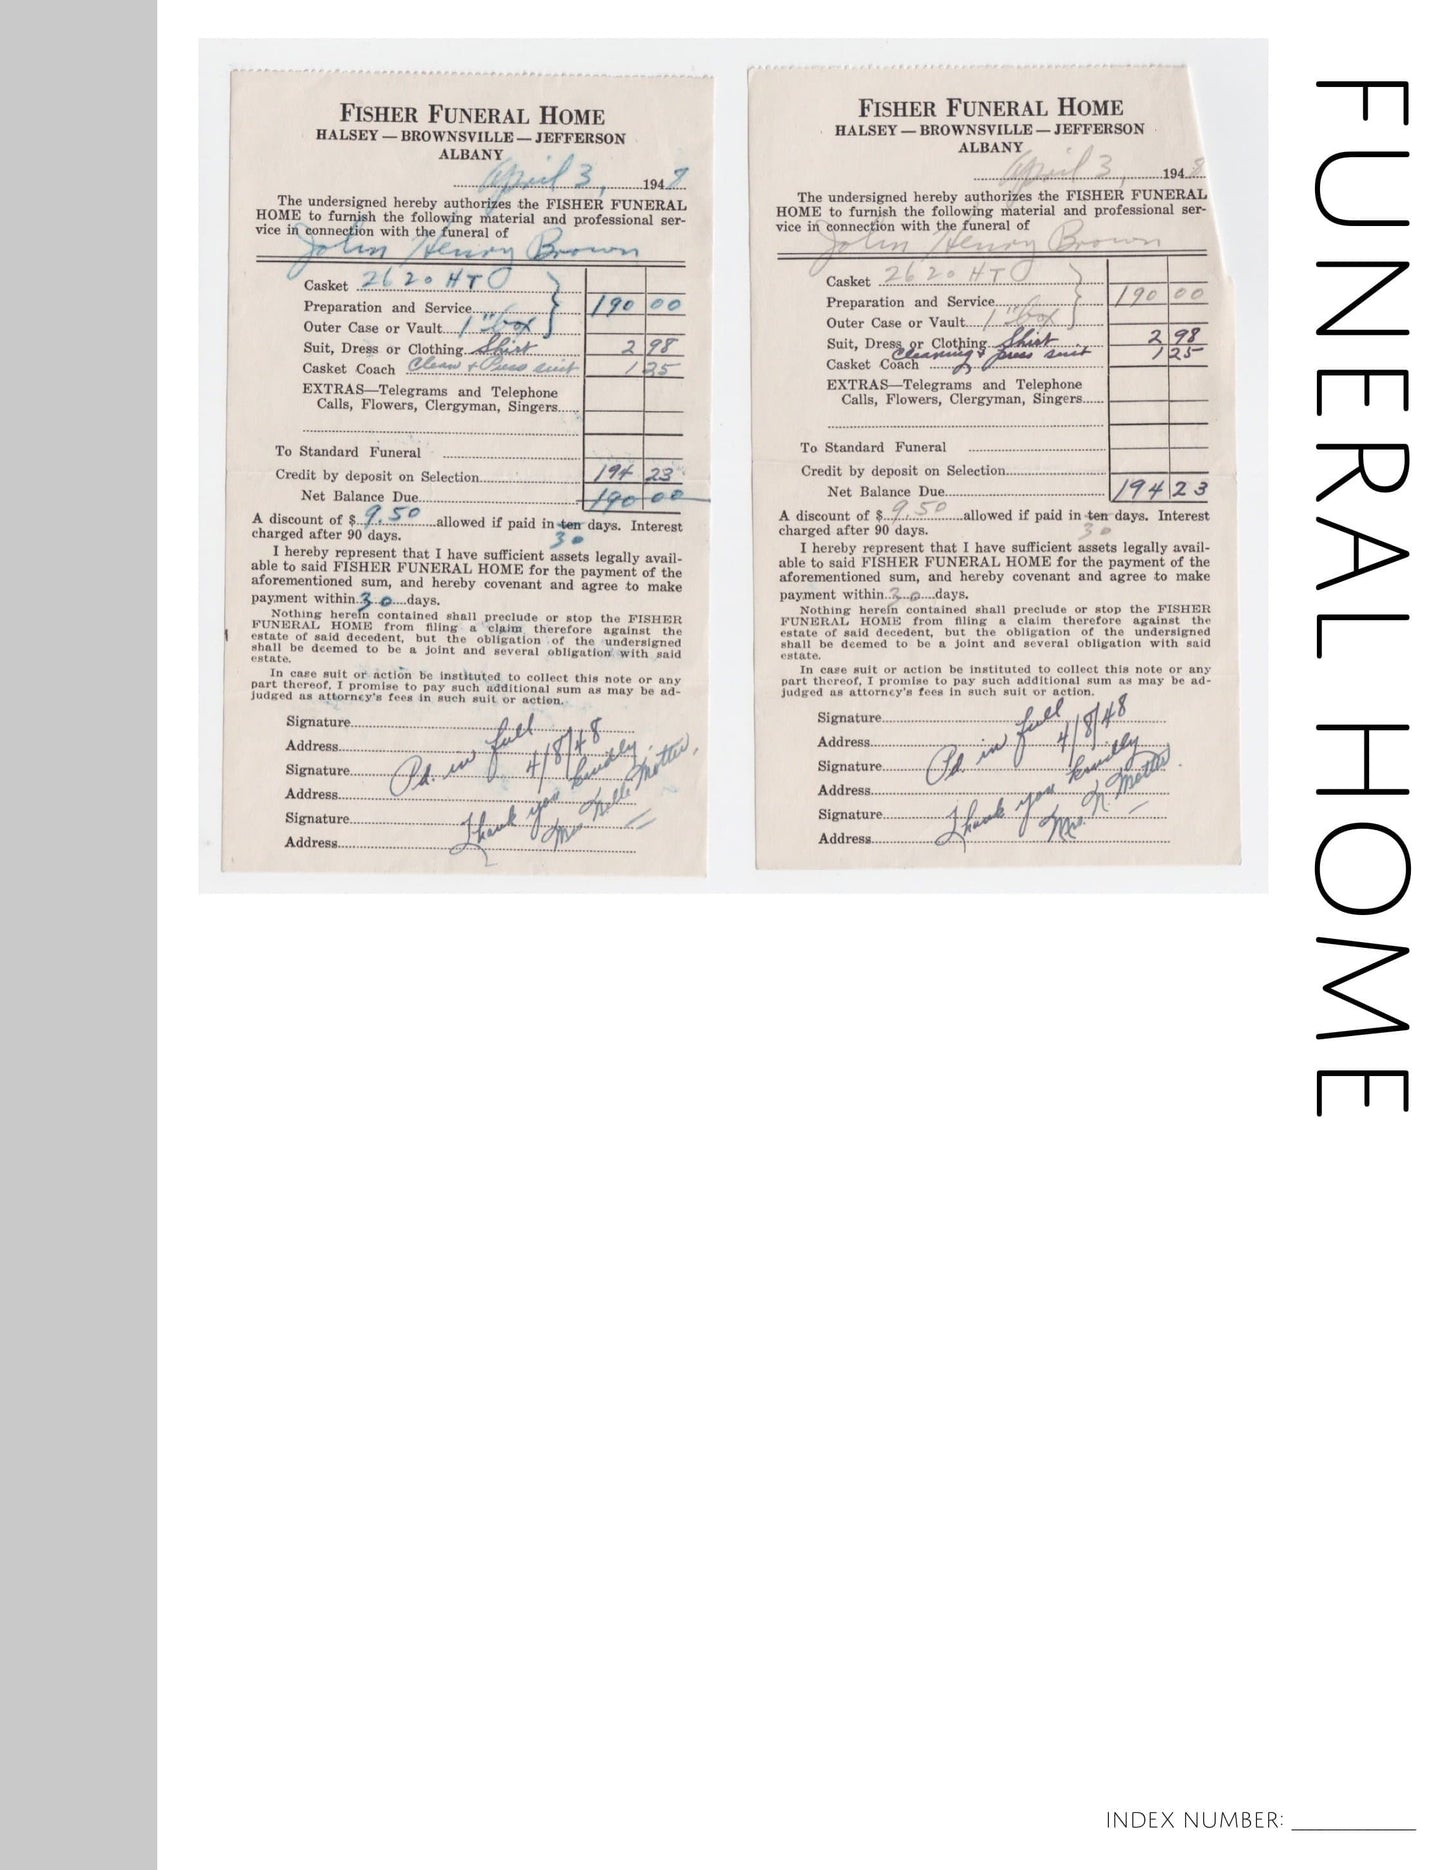 Funeral Home: Printable Genealogy Form (Digital Download)